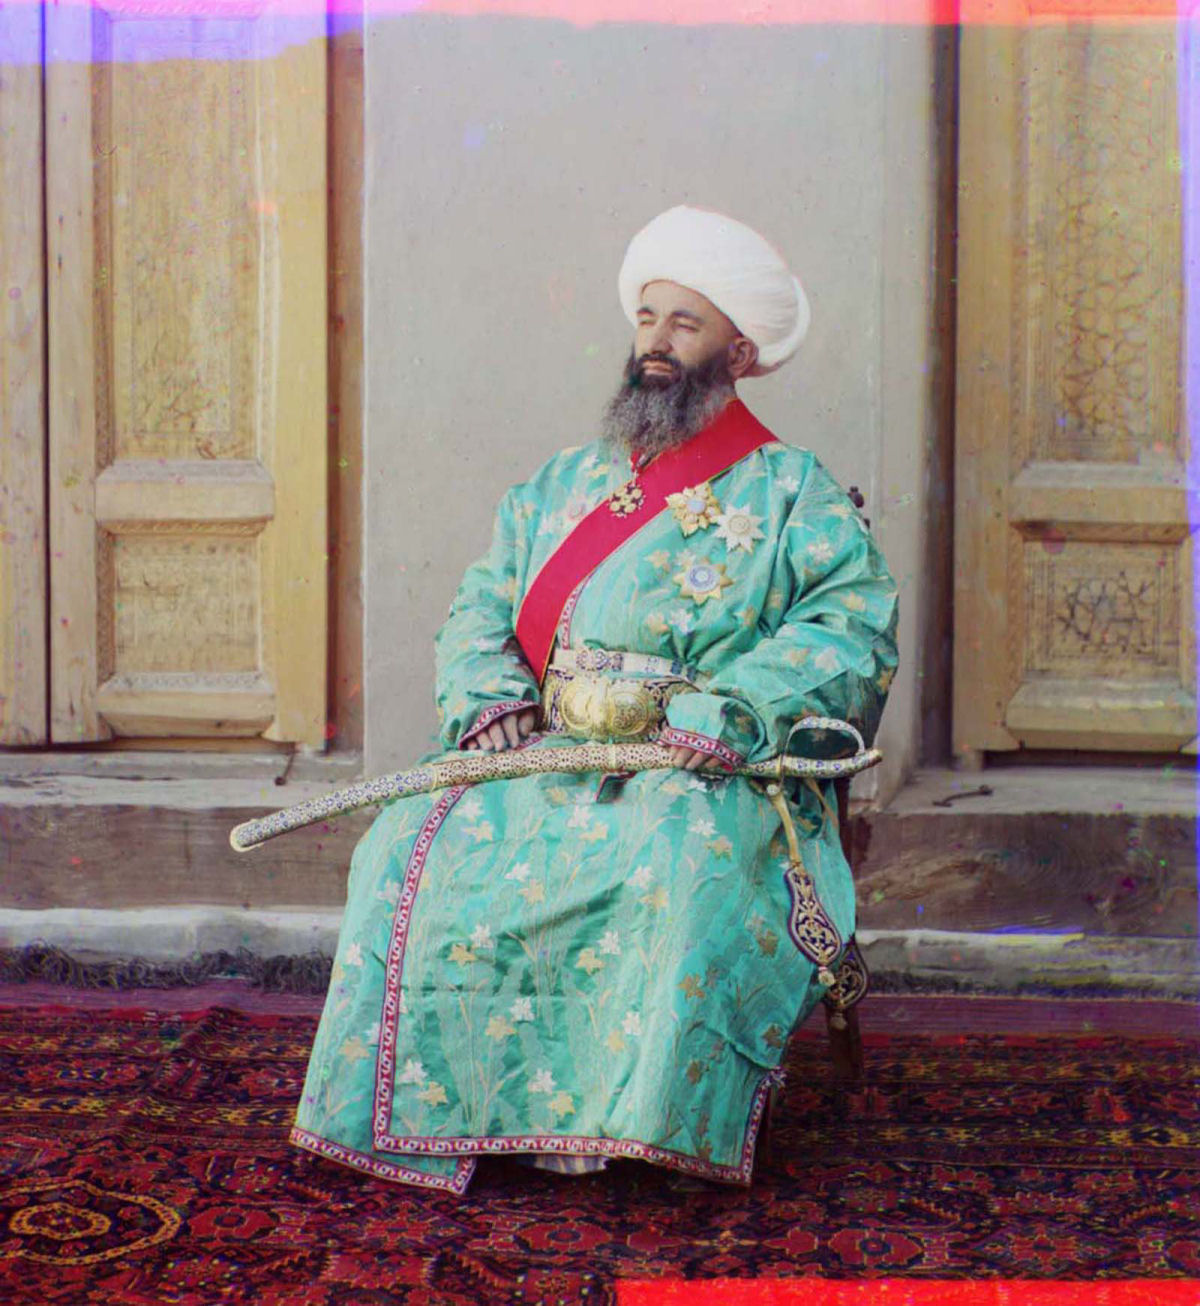 O Uzbequistão da era czarista capturado em raras fotos coloridas, entre 1907 e 1911 13